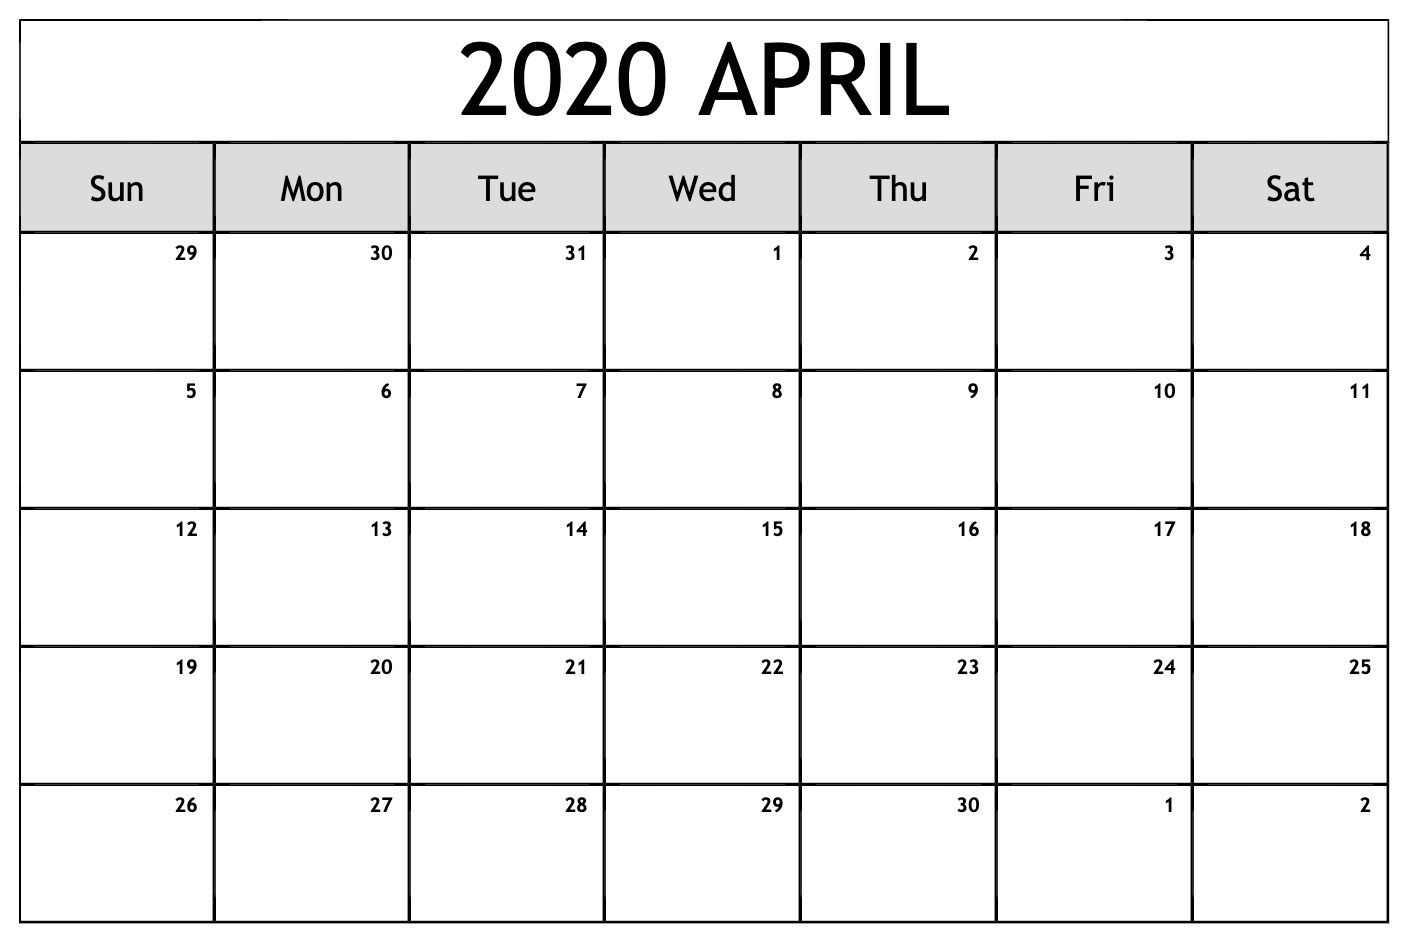 IELTS April Exam Dates 2020 - 2021 British Council